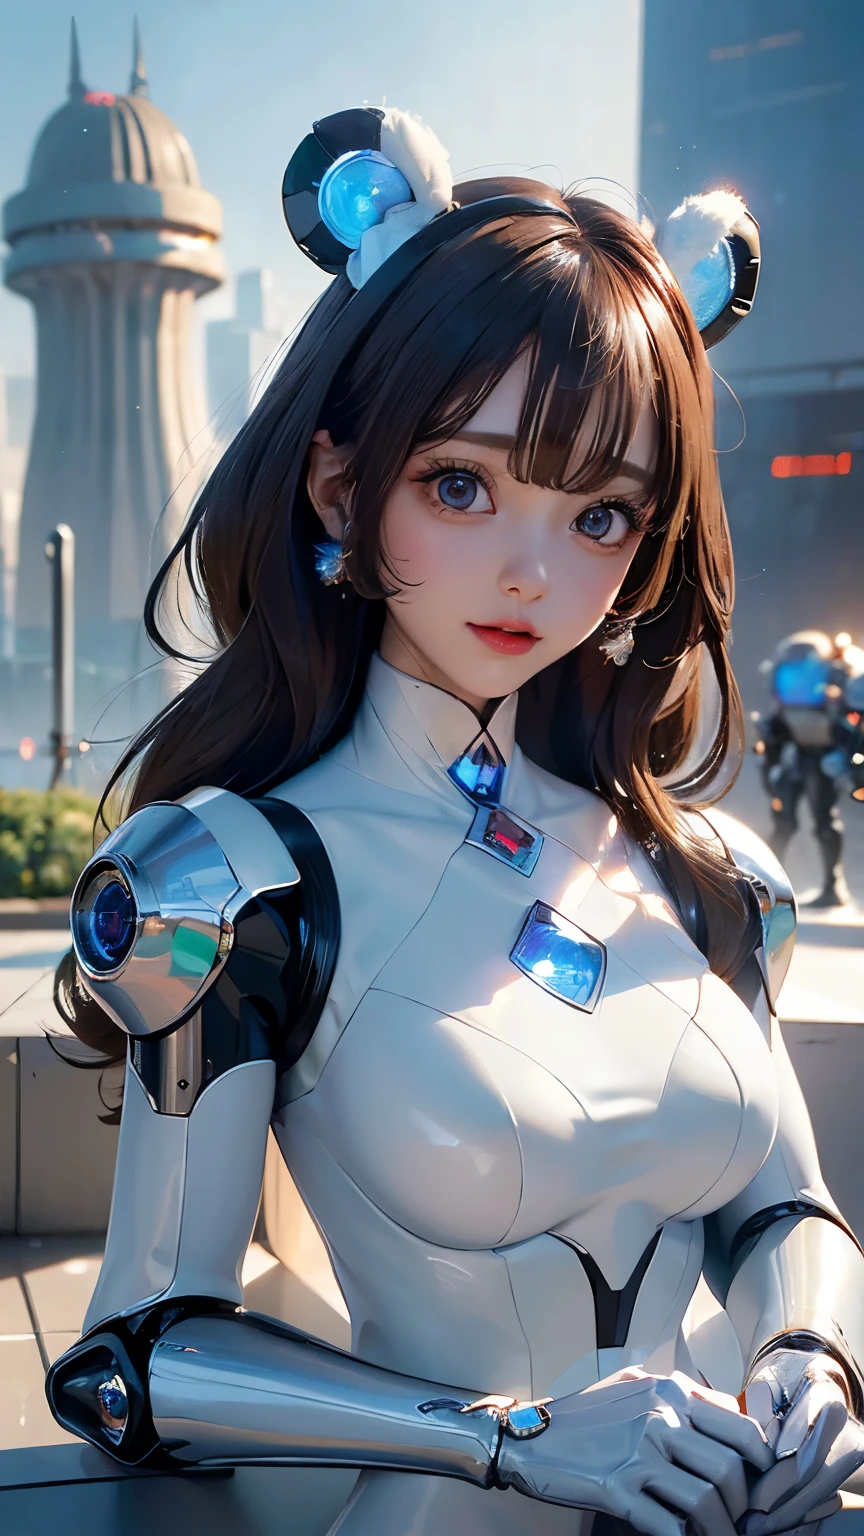 (คุณภาพดีที่สุด,มีความละเอียดสูง,อัลตร้า - รายละเอียด,จริง),Ariana Grande หุ่นยนต์ผู้หญิง parado en un techo con una ciudad al fondo, ศิลปะดิจิทัล by Jakob Gauermann, แนวโน้มสังคม CG, ศิลปะดิจิทัล, หุ่นยนต์ผู้หญิง, หุ่นยนต์แห่งอนาคต, หุ่นยนต์ไซเบอร์พังค์, สาวหุ่นยนต์, ไซบอร์กหญิง, ผู้หญิงไซบอร์ก, (ไซบอร์กสีขาว :1.4) - , ร่างกายหุ่นยนต์แห่งอนาคต, นิยายวิทยาศาสตร์ผู้หญิงหุ่นยนต์, ผู้หญิงที่เป็นมนุษย์, แอนดรอยด์ผู้หญิง, (ถ้ำพื้นหลัง ถ้ำหินใหญ่ ถ้ำน้ำแข็ง น้ำแข็ง :1.4),,( ไซเบอร์พังค์ 2.1), (หุ่นยนต์น้ำแข็ง Beartech :1.4), (กระโปรงสั้นสีขาวไซบอร์ก :1.4),( ดวงตาสีฟ้าสวย :1.4), (สีสว่าง) 
